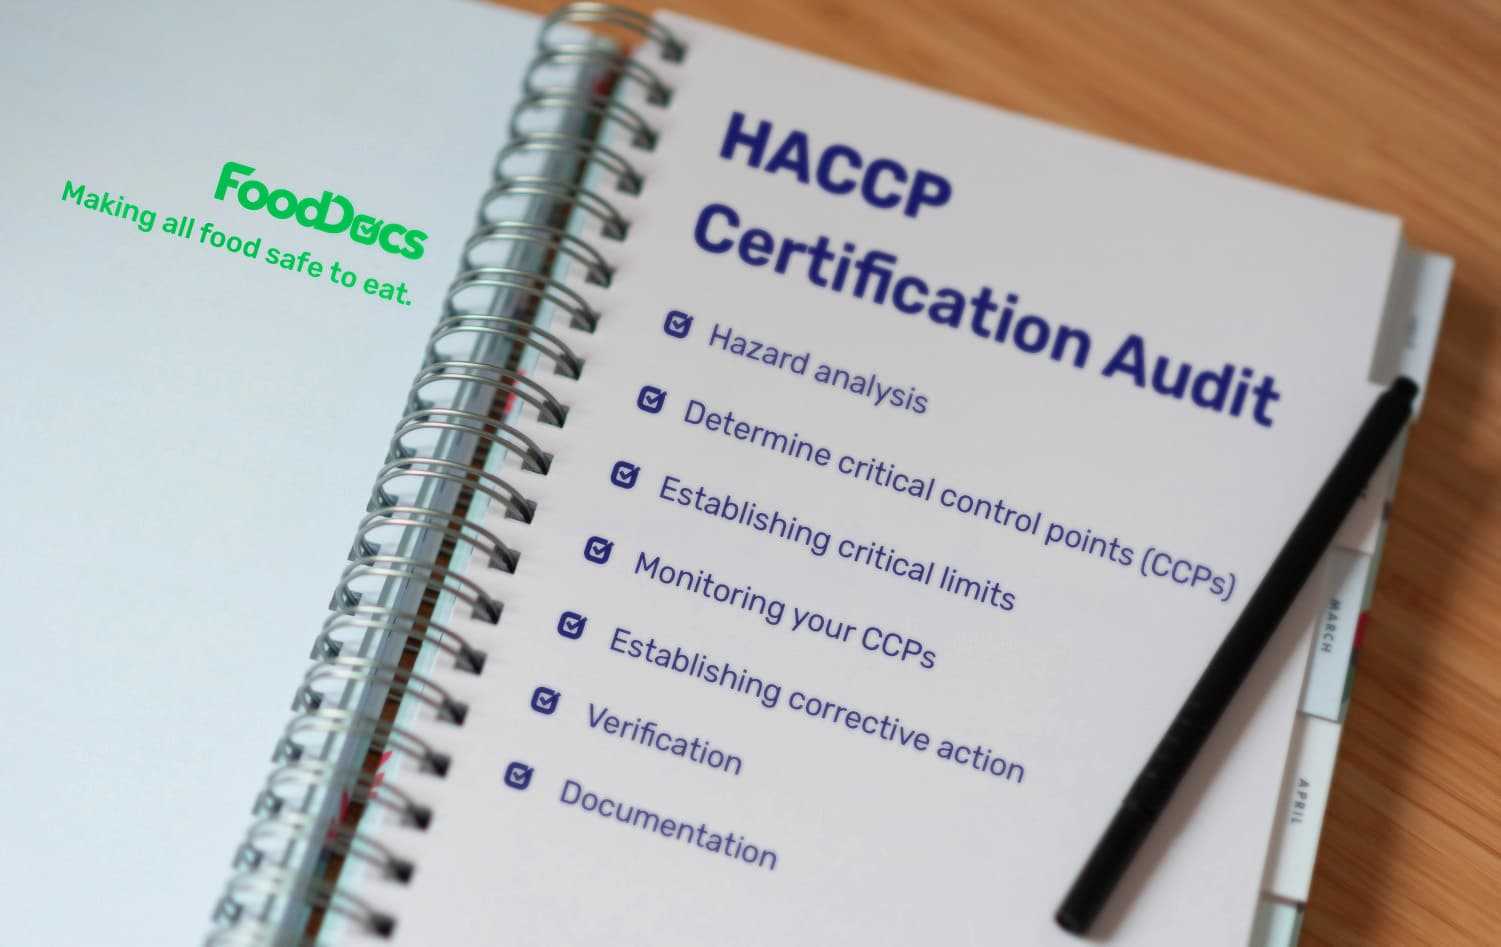 haccp certification audit